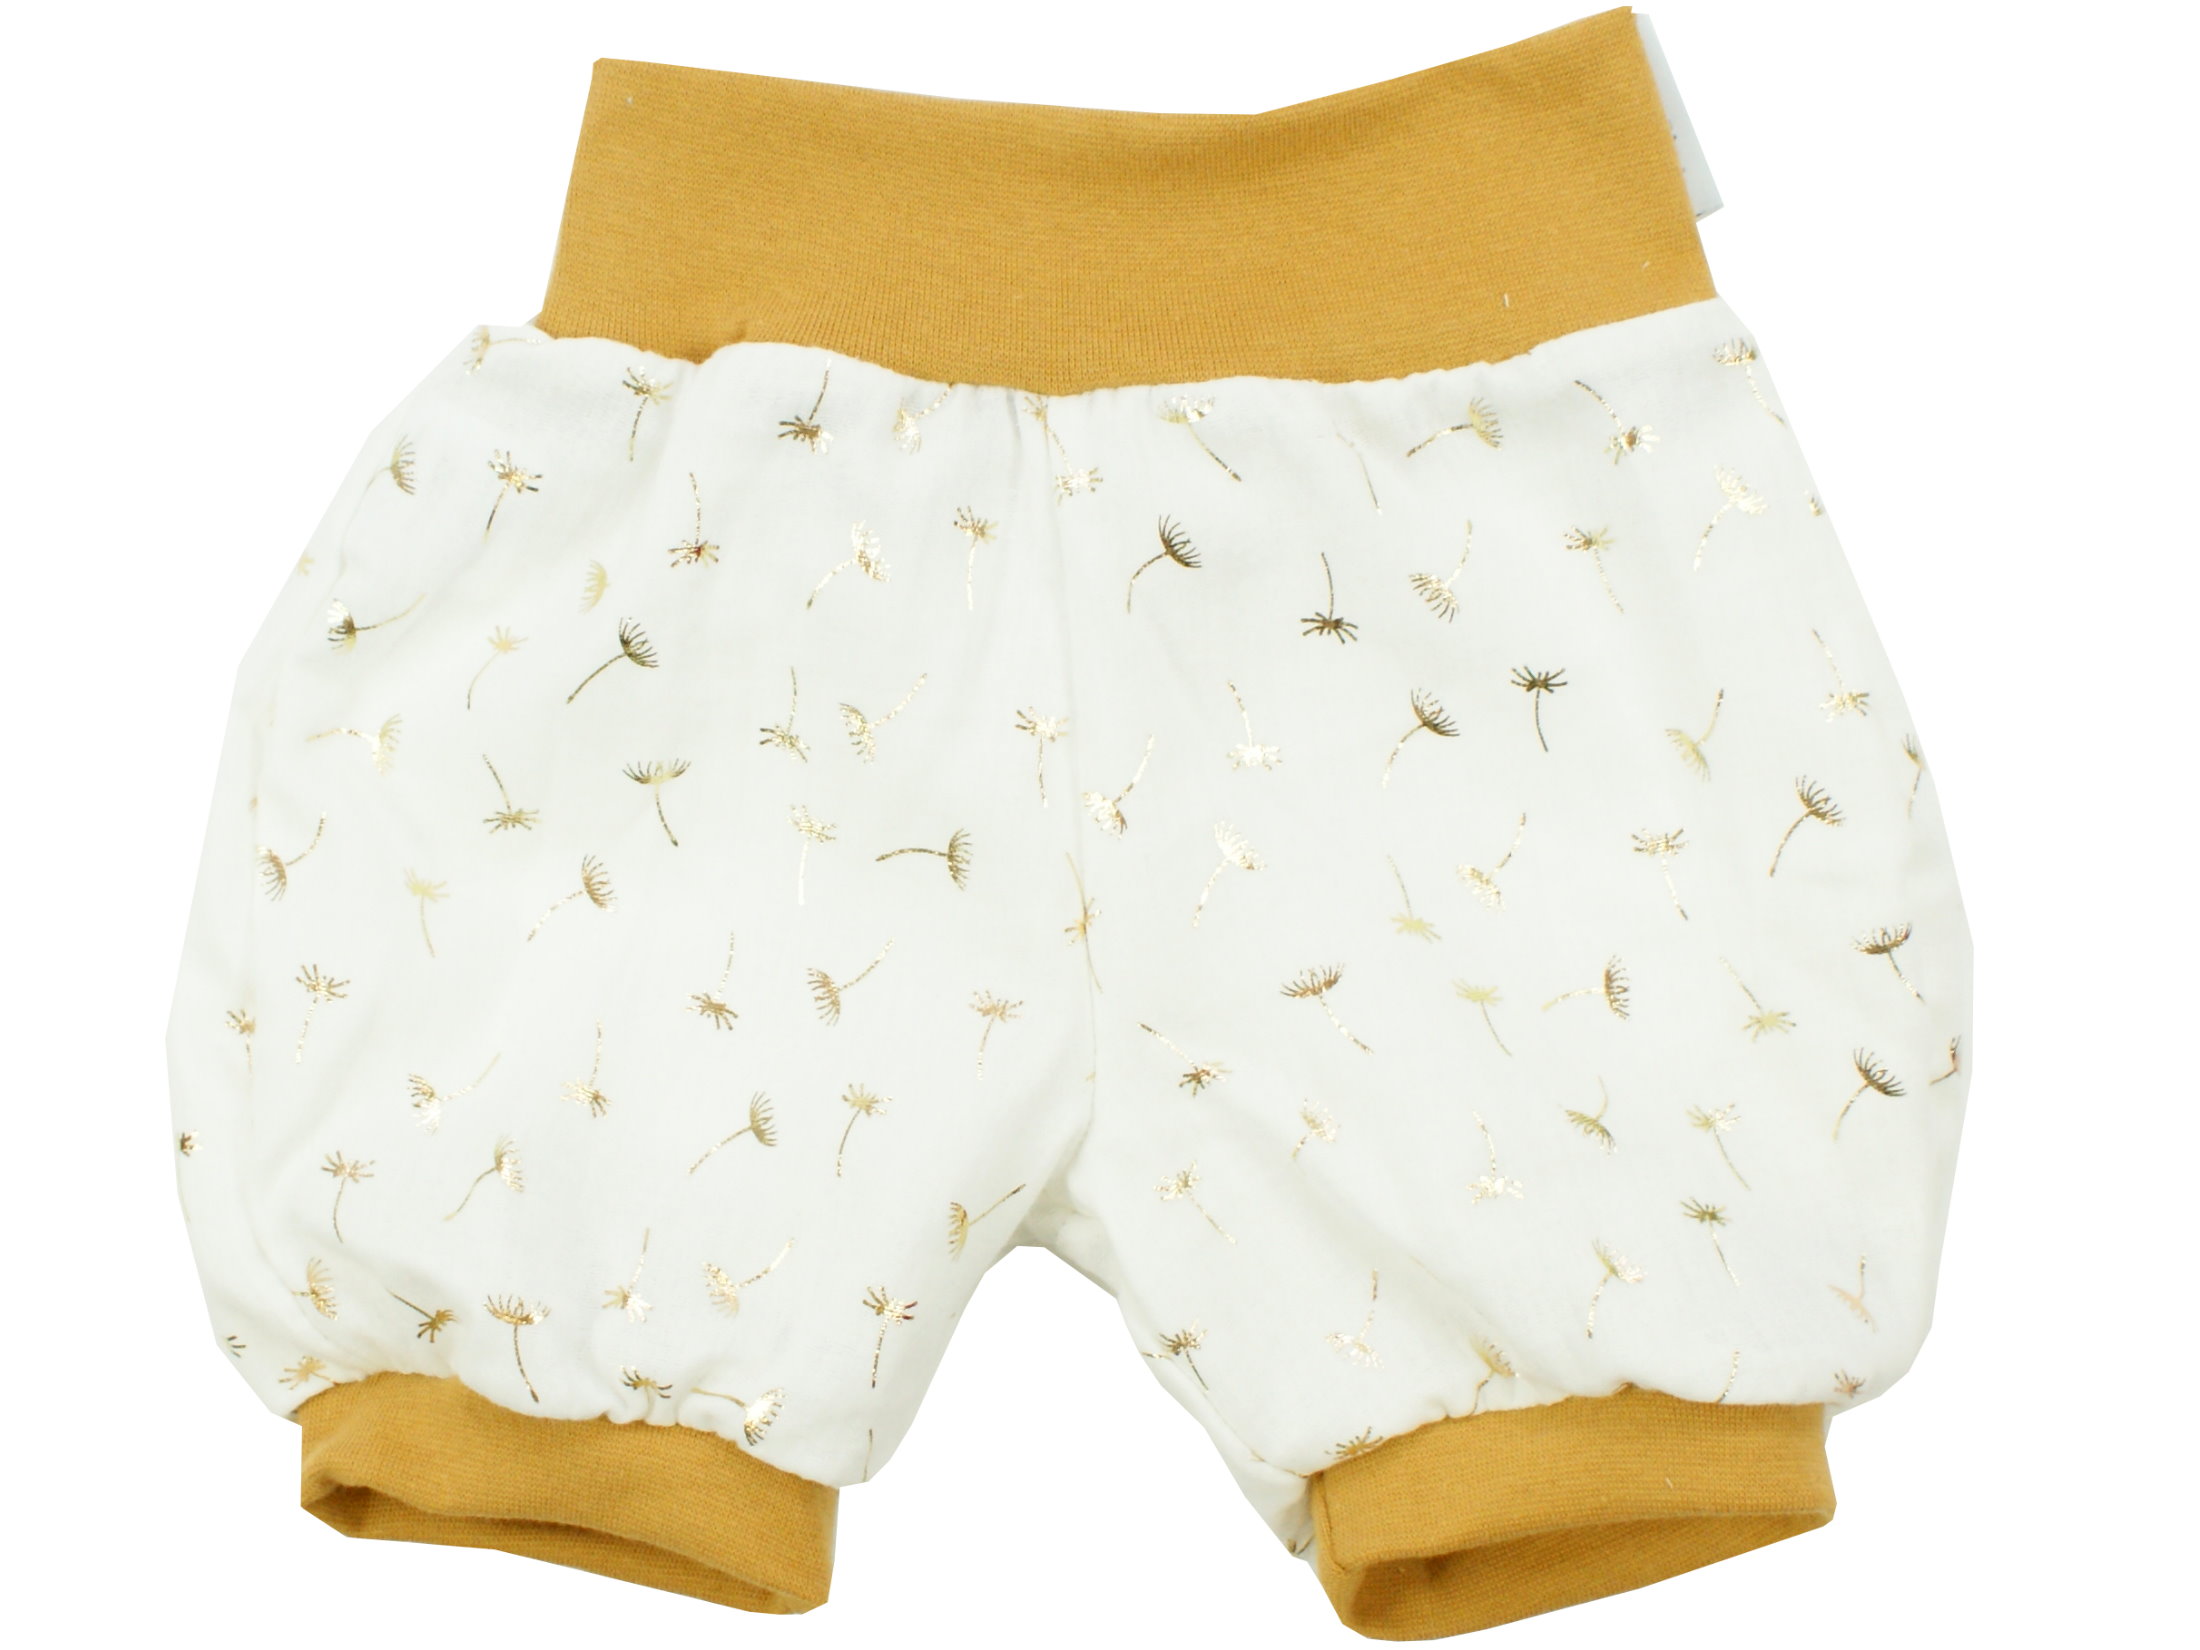 Musselin Kinder Shorts "Golden Blossom" creme gold